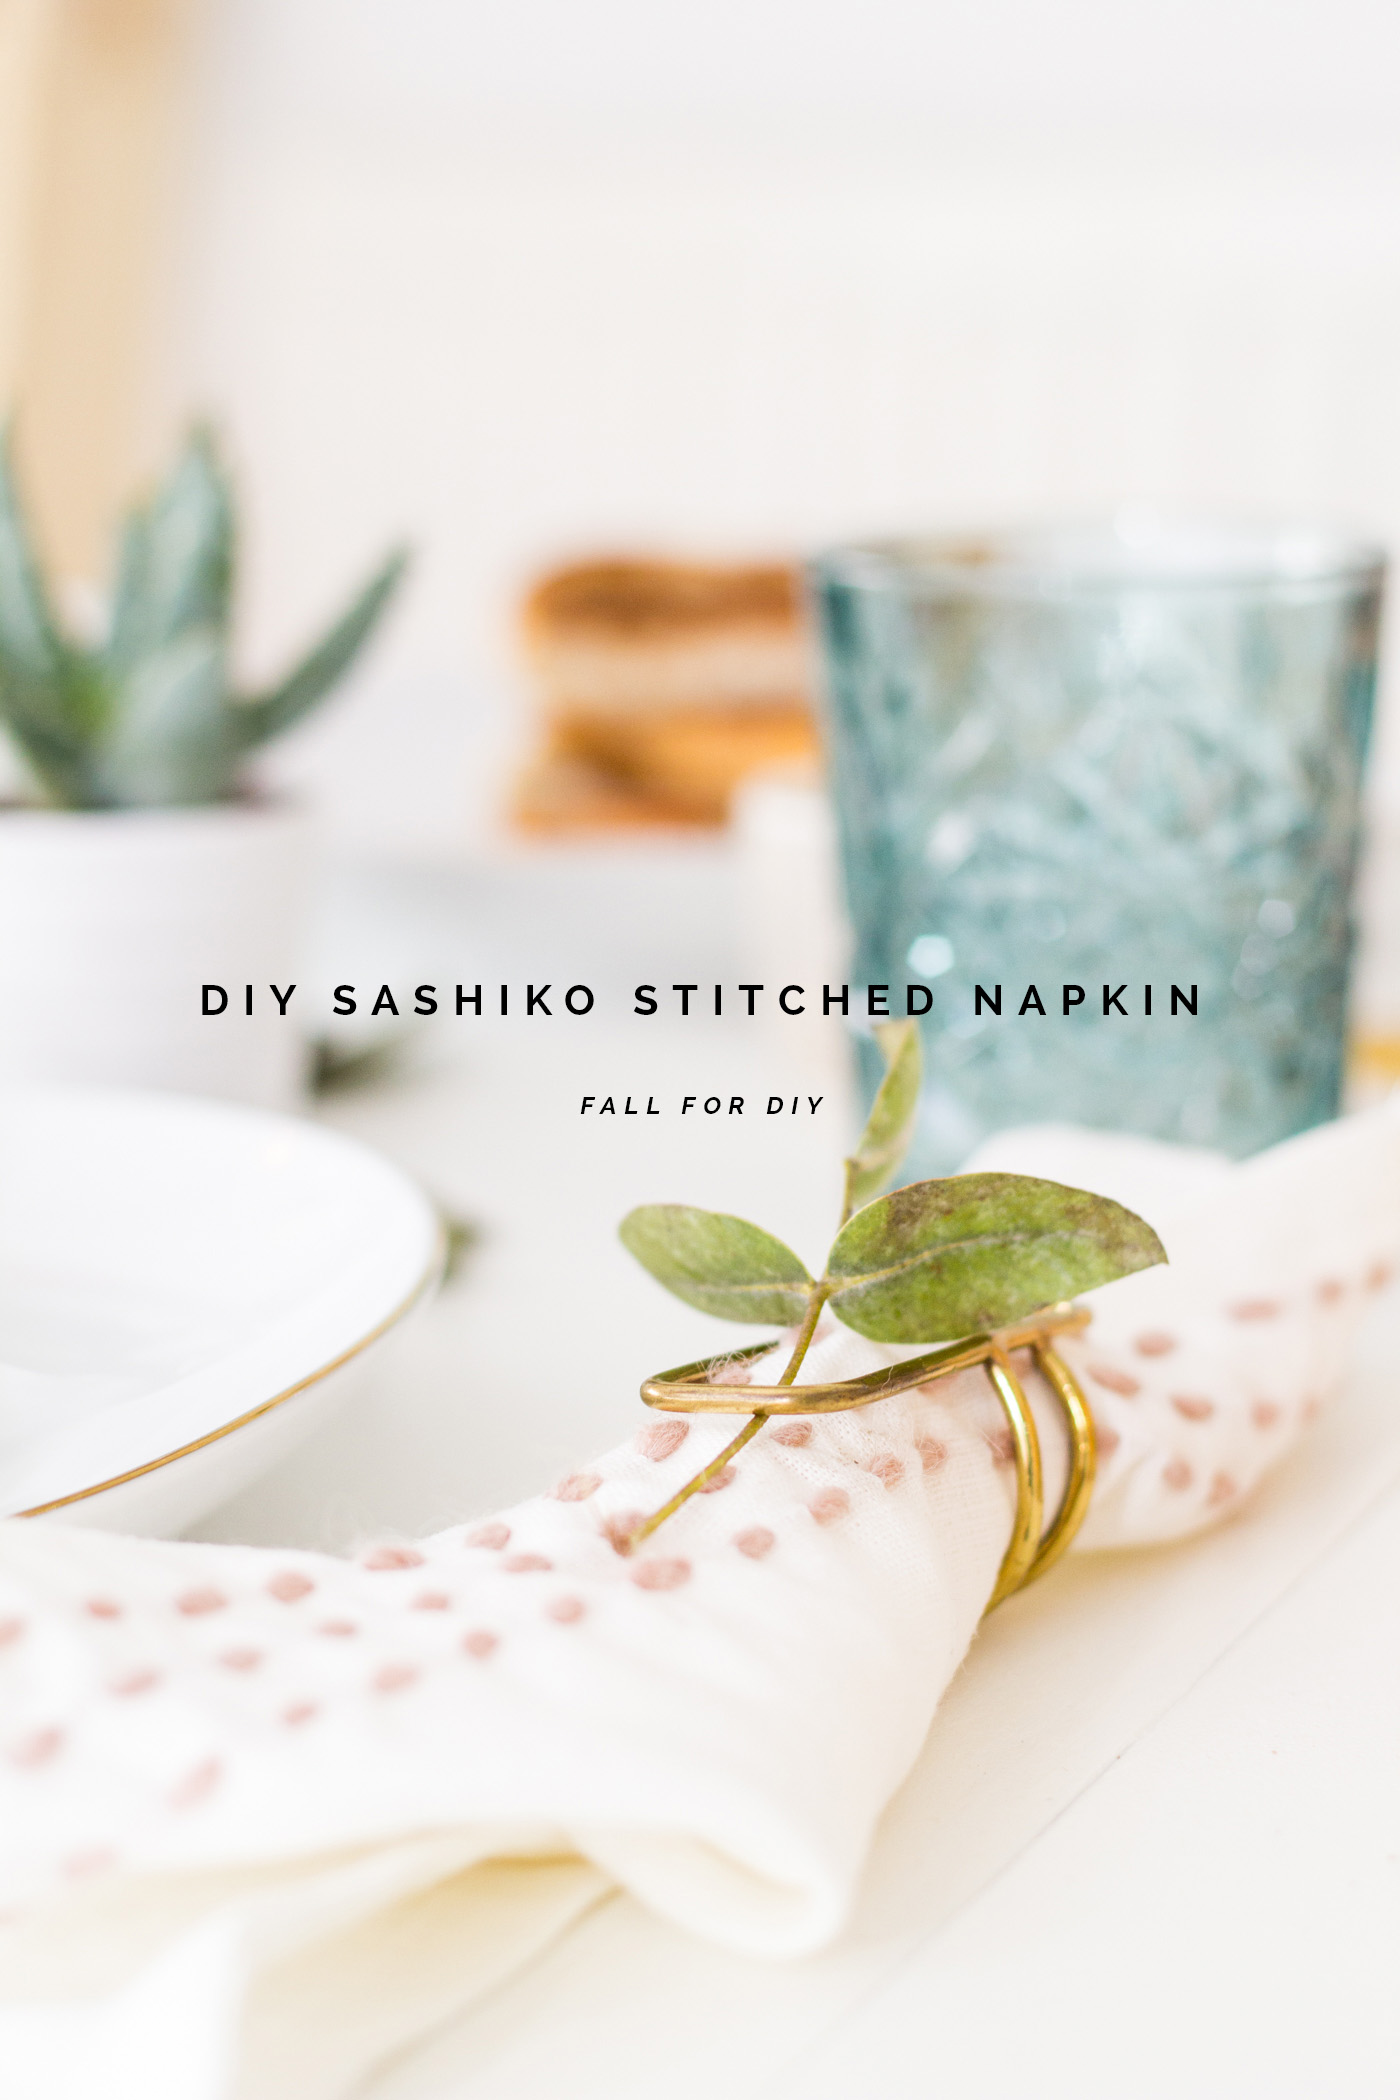 DIY Sashiko Stitched Napkin tutorial | @fallfordiy